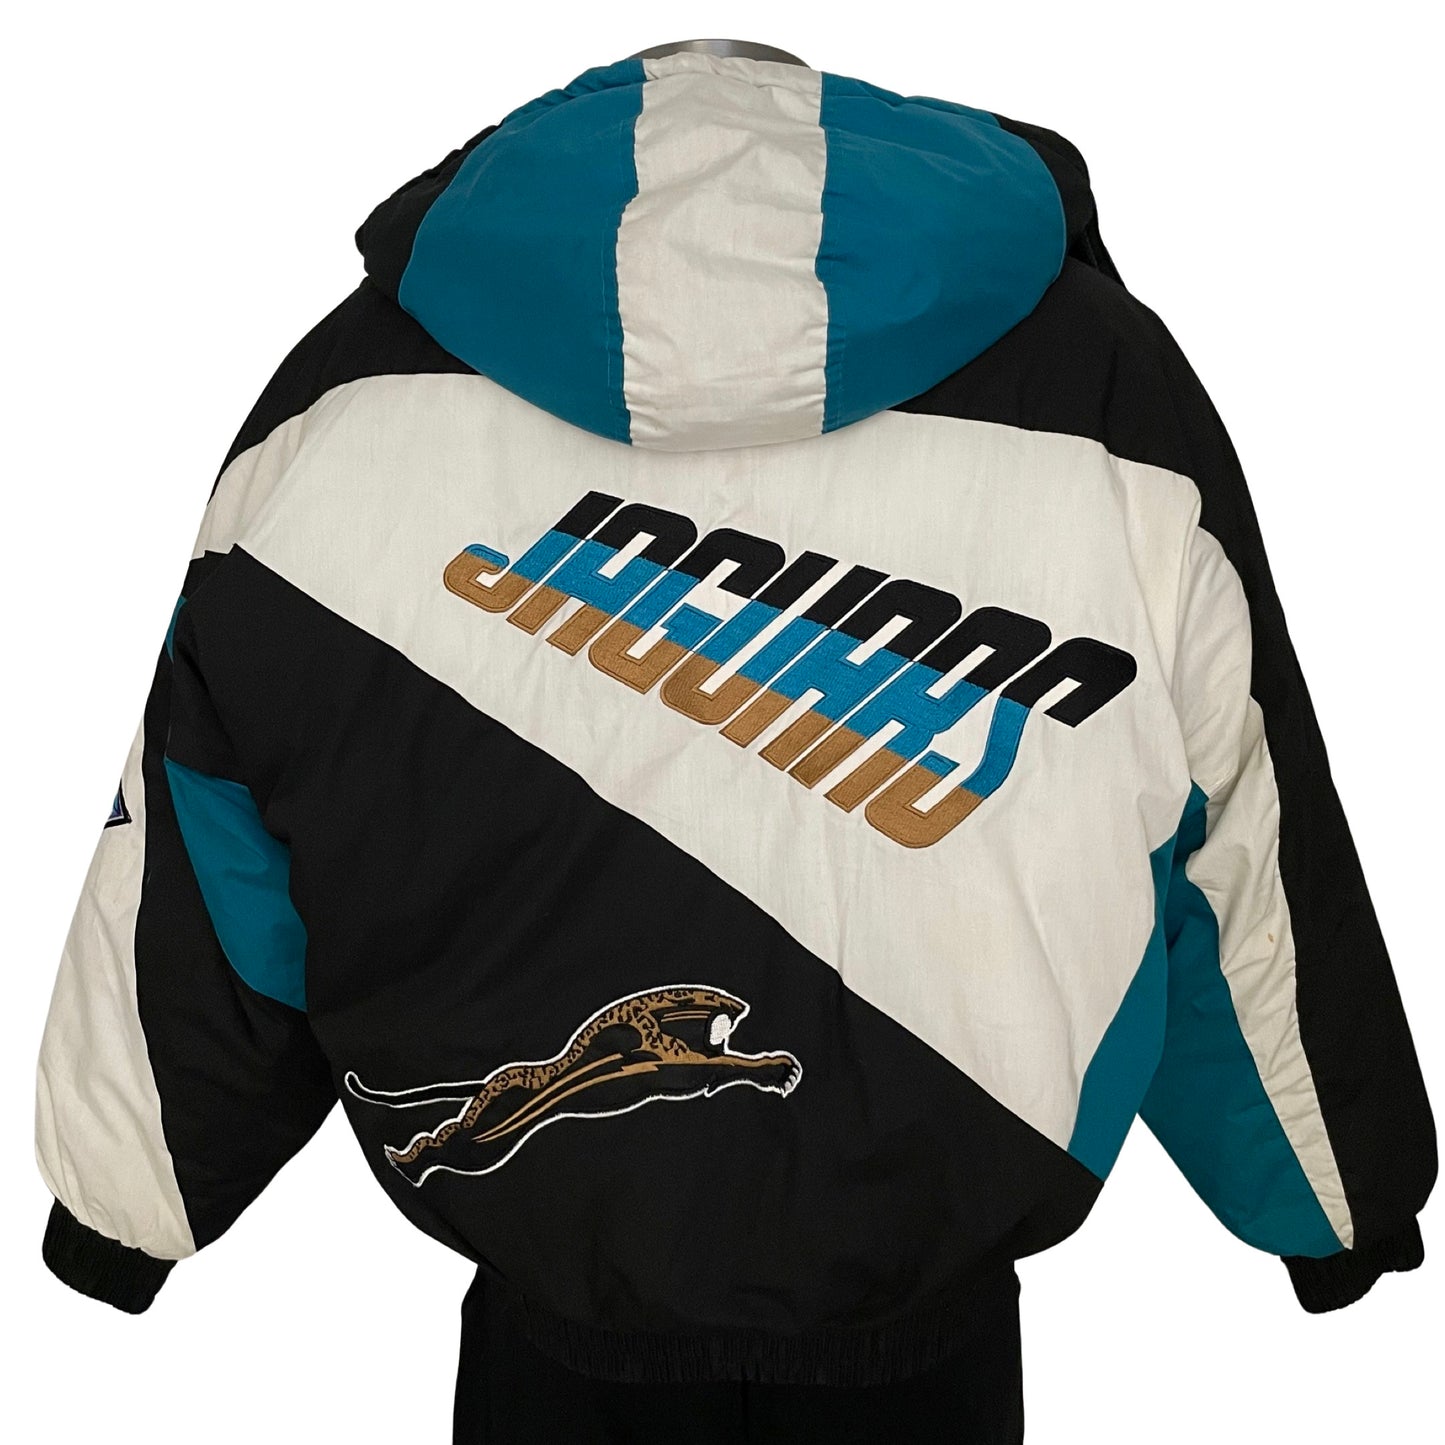 Vintage Jacksonville Jaguars banned logo PRO PLAYER jacket size LARGE